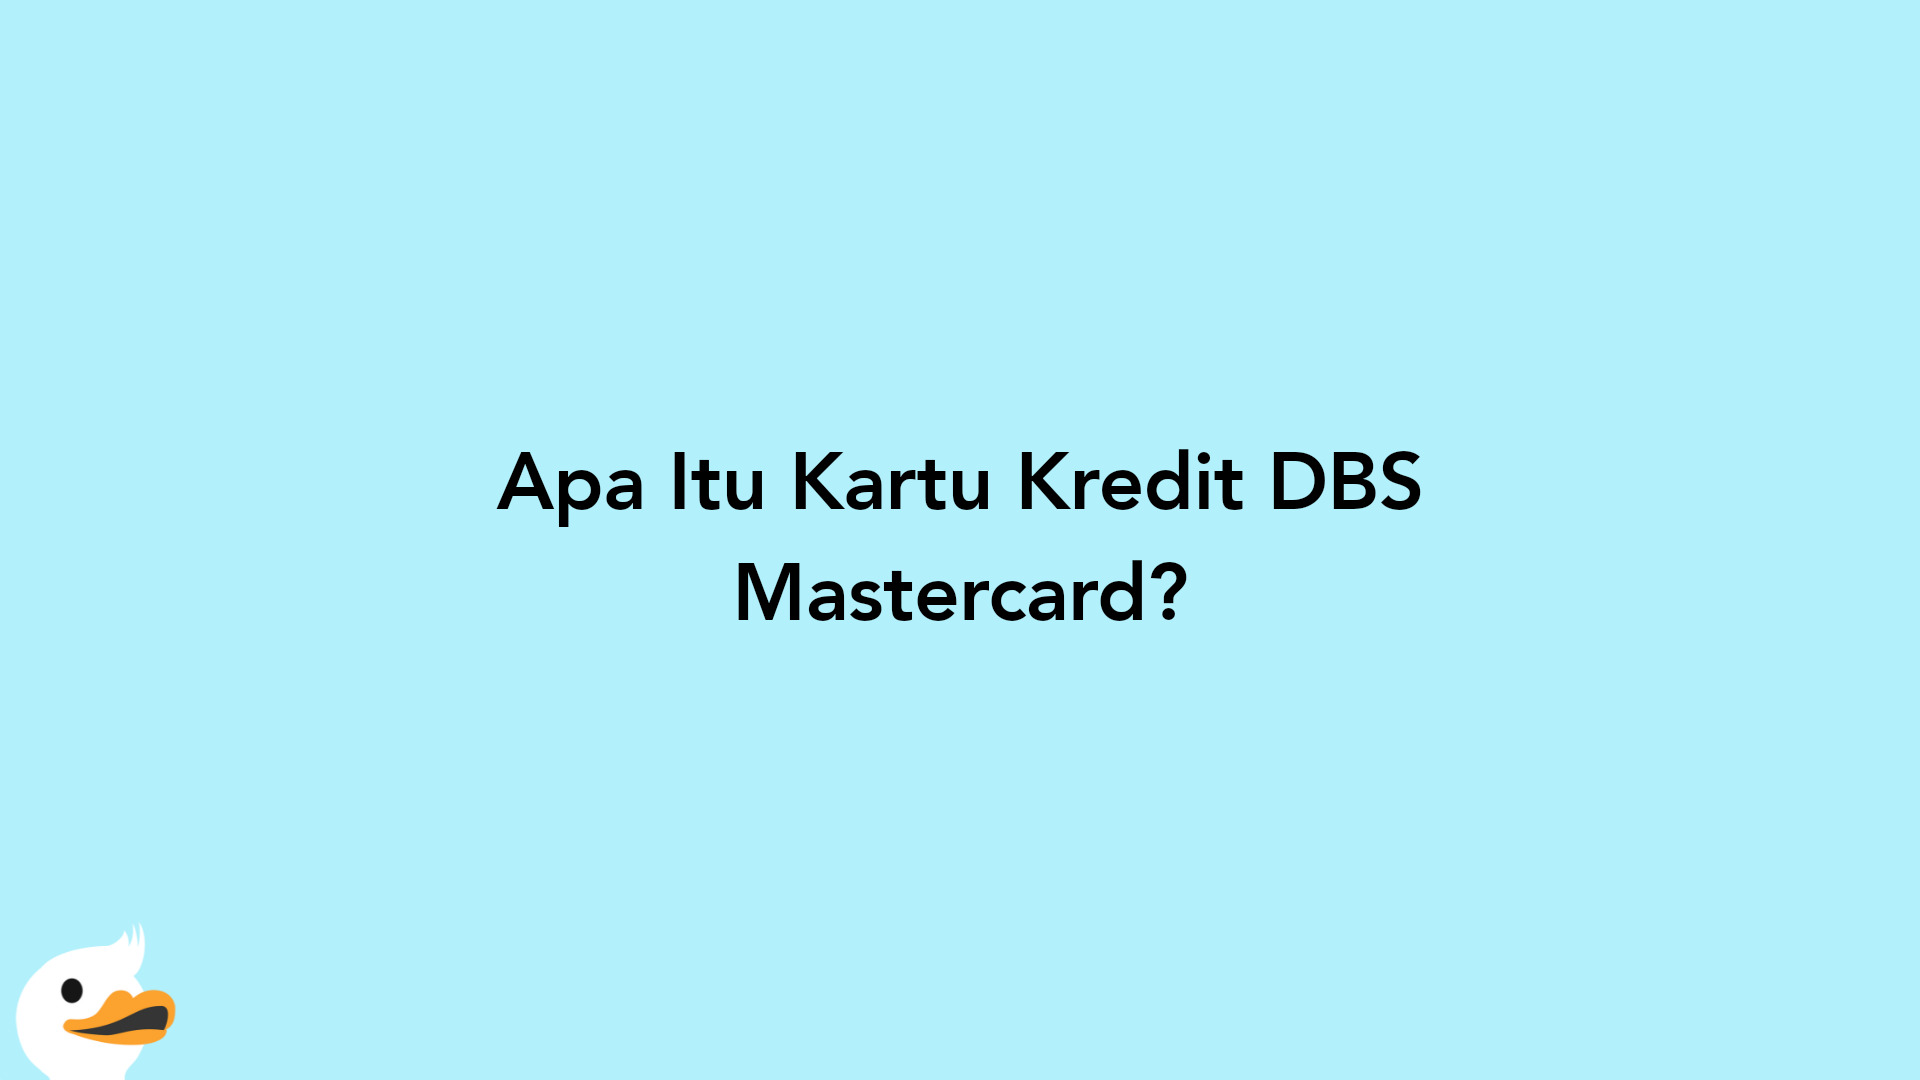 Apa Itu Kartu Kredit DBS Mastercard?